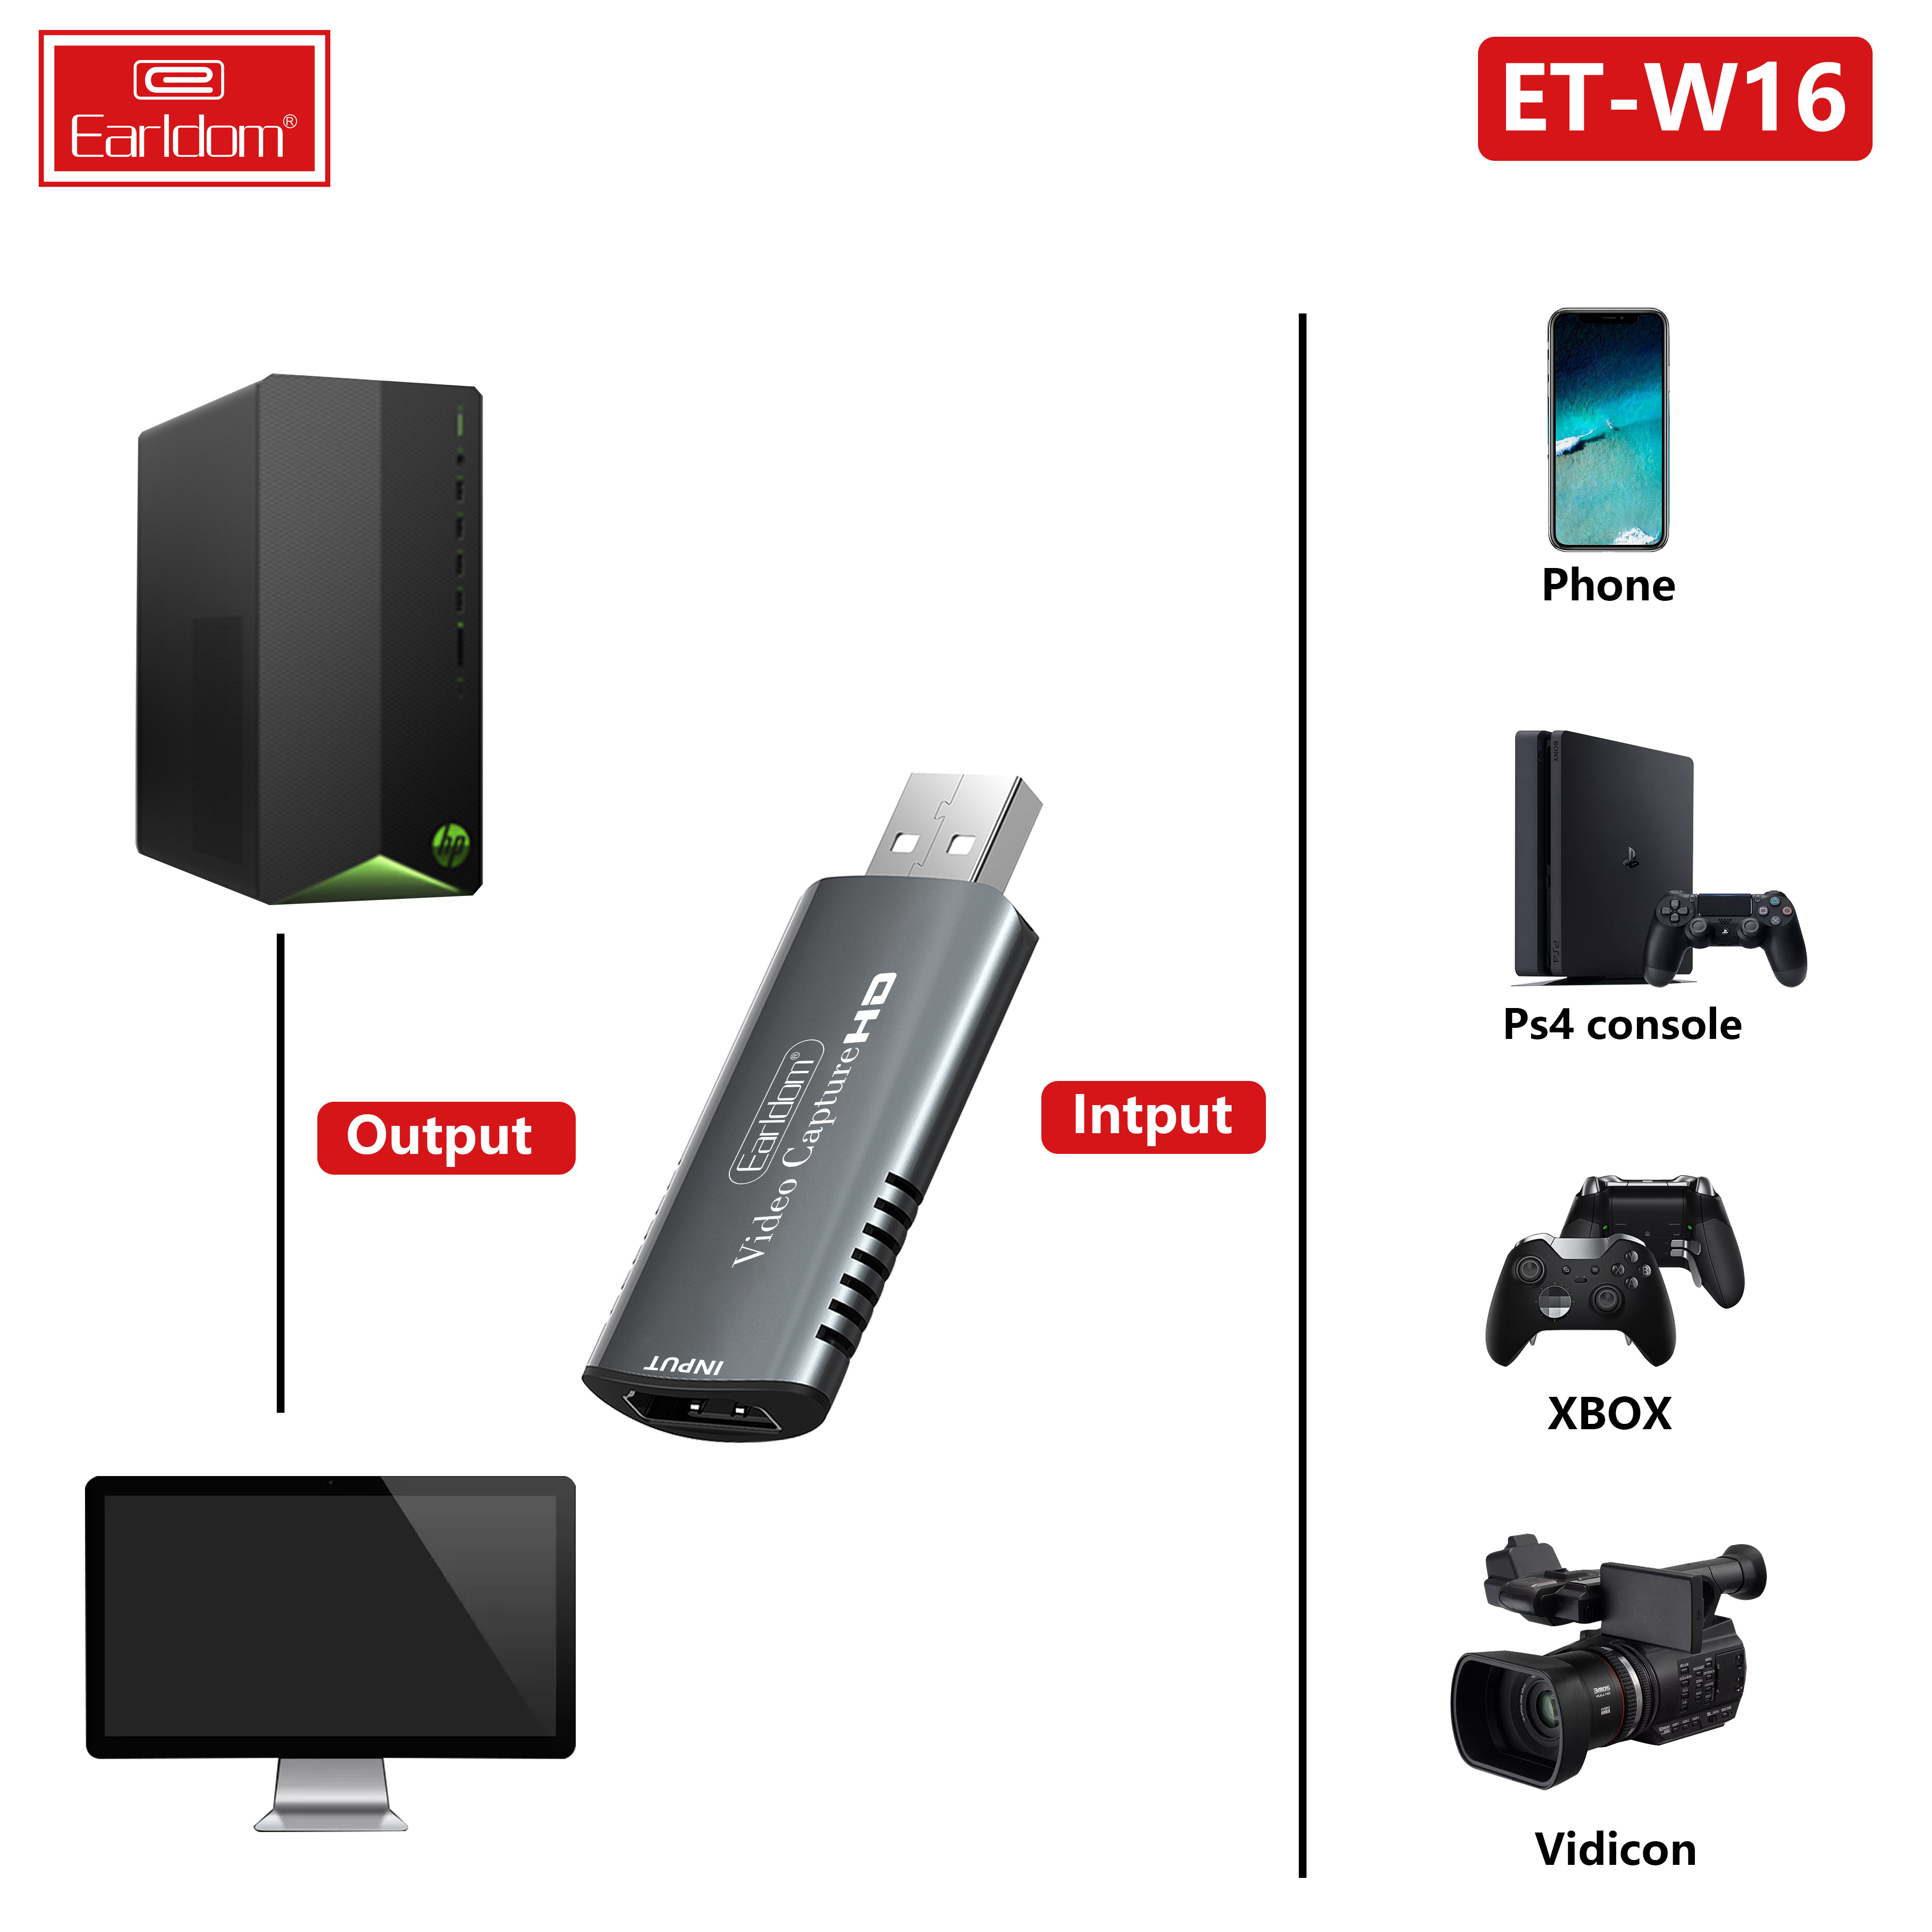 Bộ Chuyển HDMI to USB Video Capture Earldom W16 - Hỗ Trợ Live Stream, Ghi Hình Từ Điện Thoại, Camera, PS4, XBOX (Màu Ngẫu Nhiên) - Hàng Chính Hãng